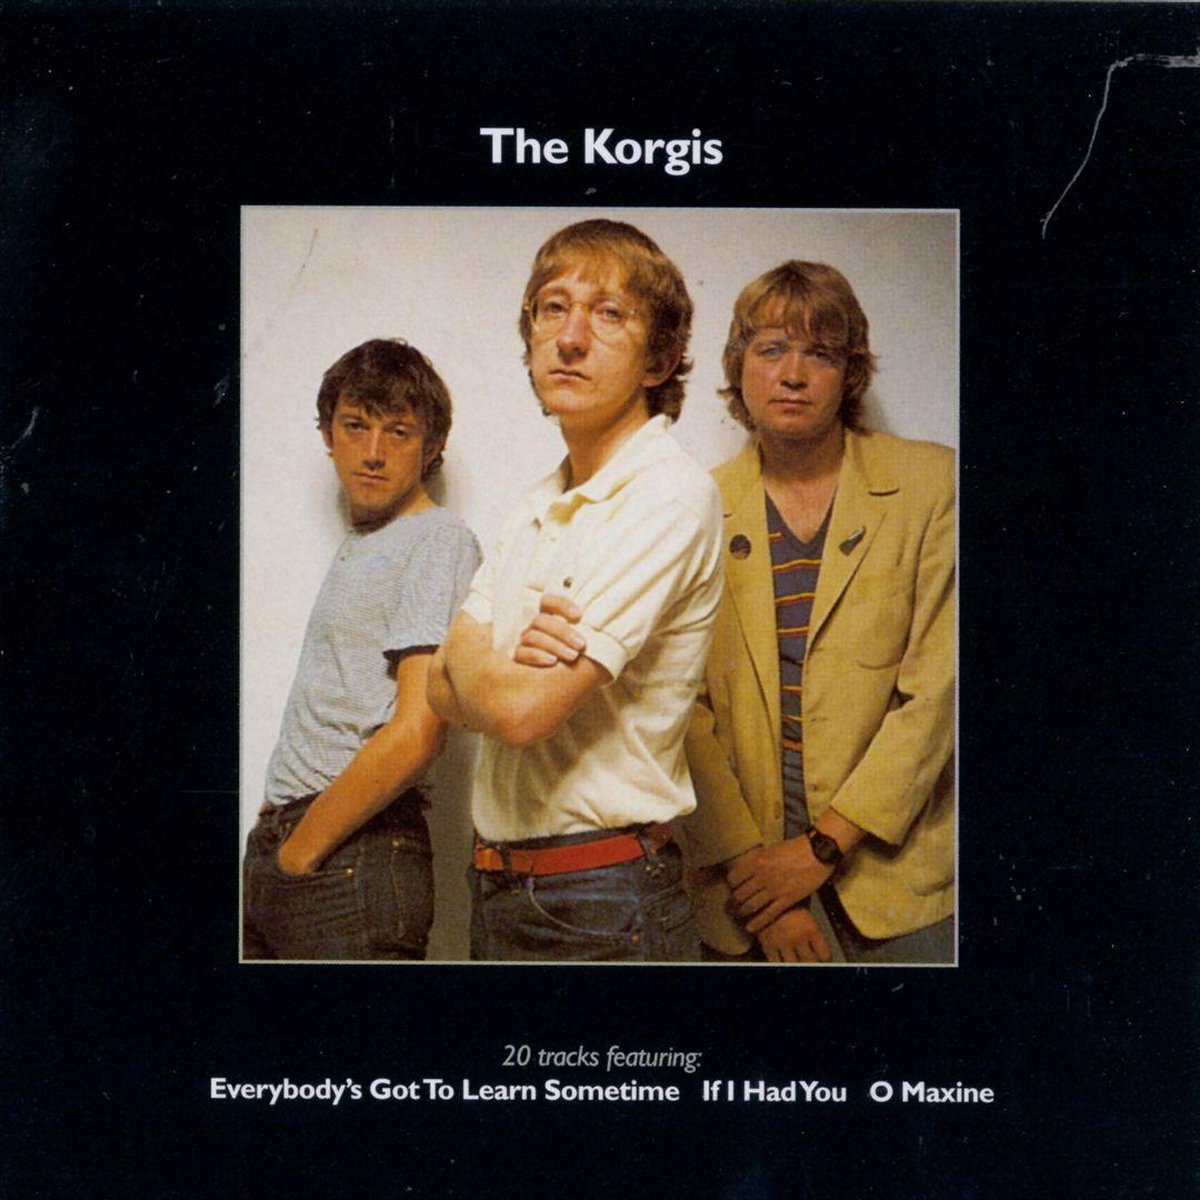 Archive - The Korgis